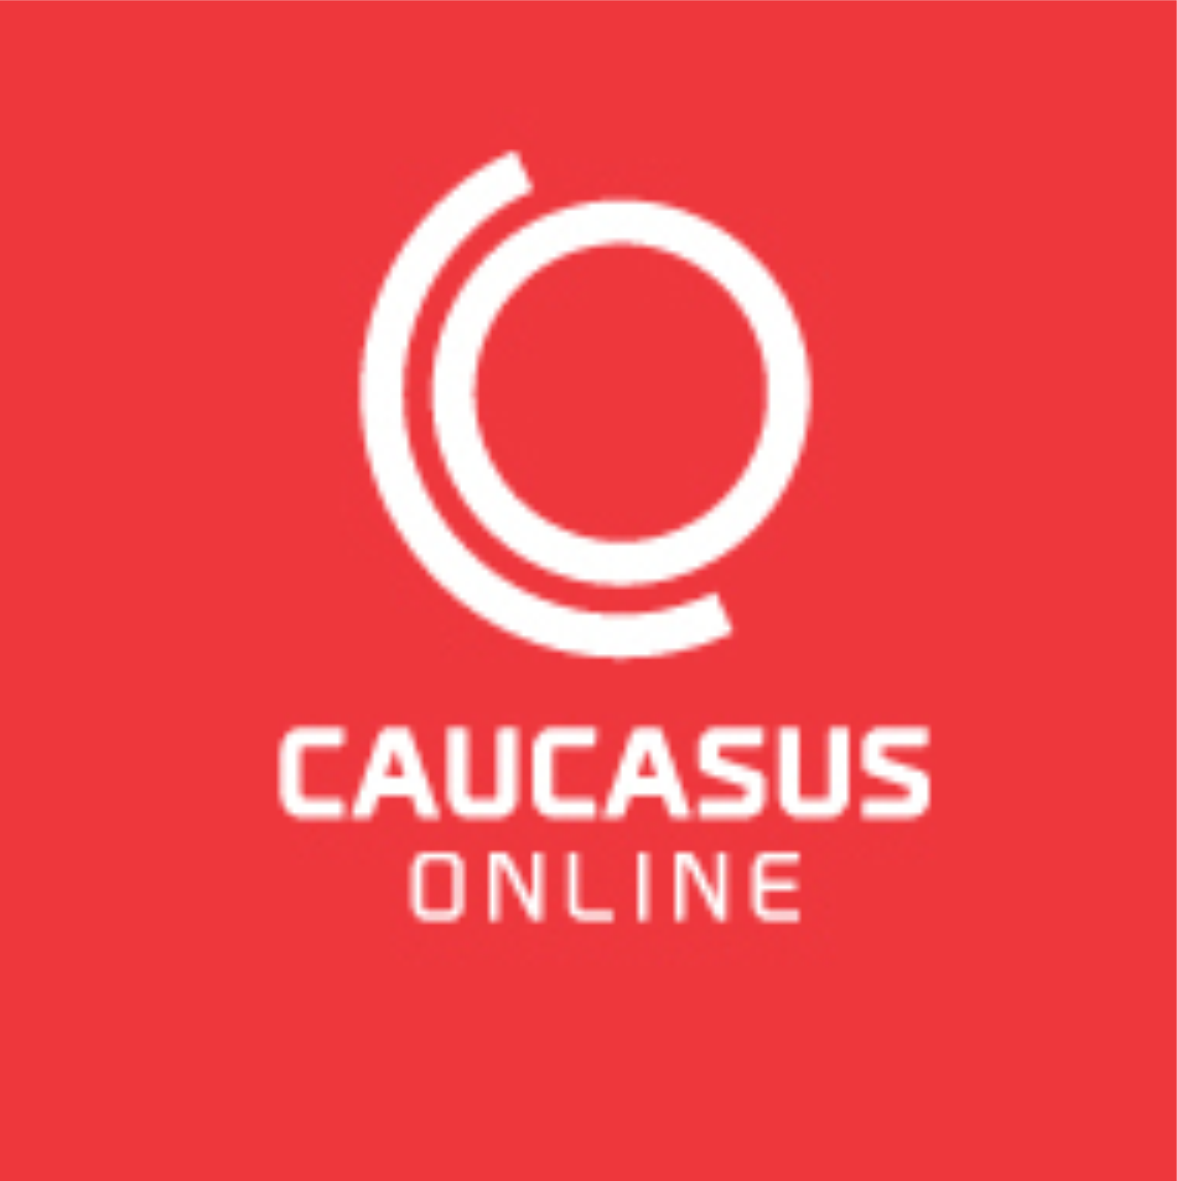 Caucusus online